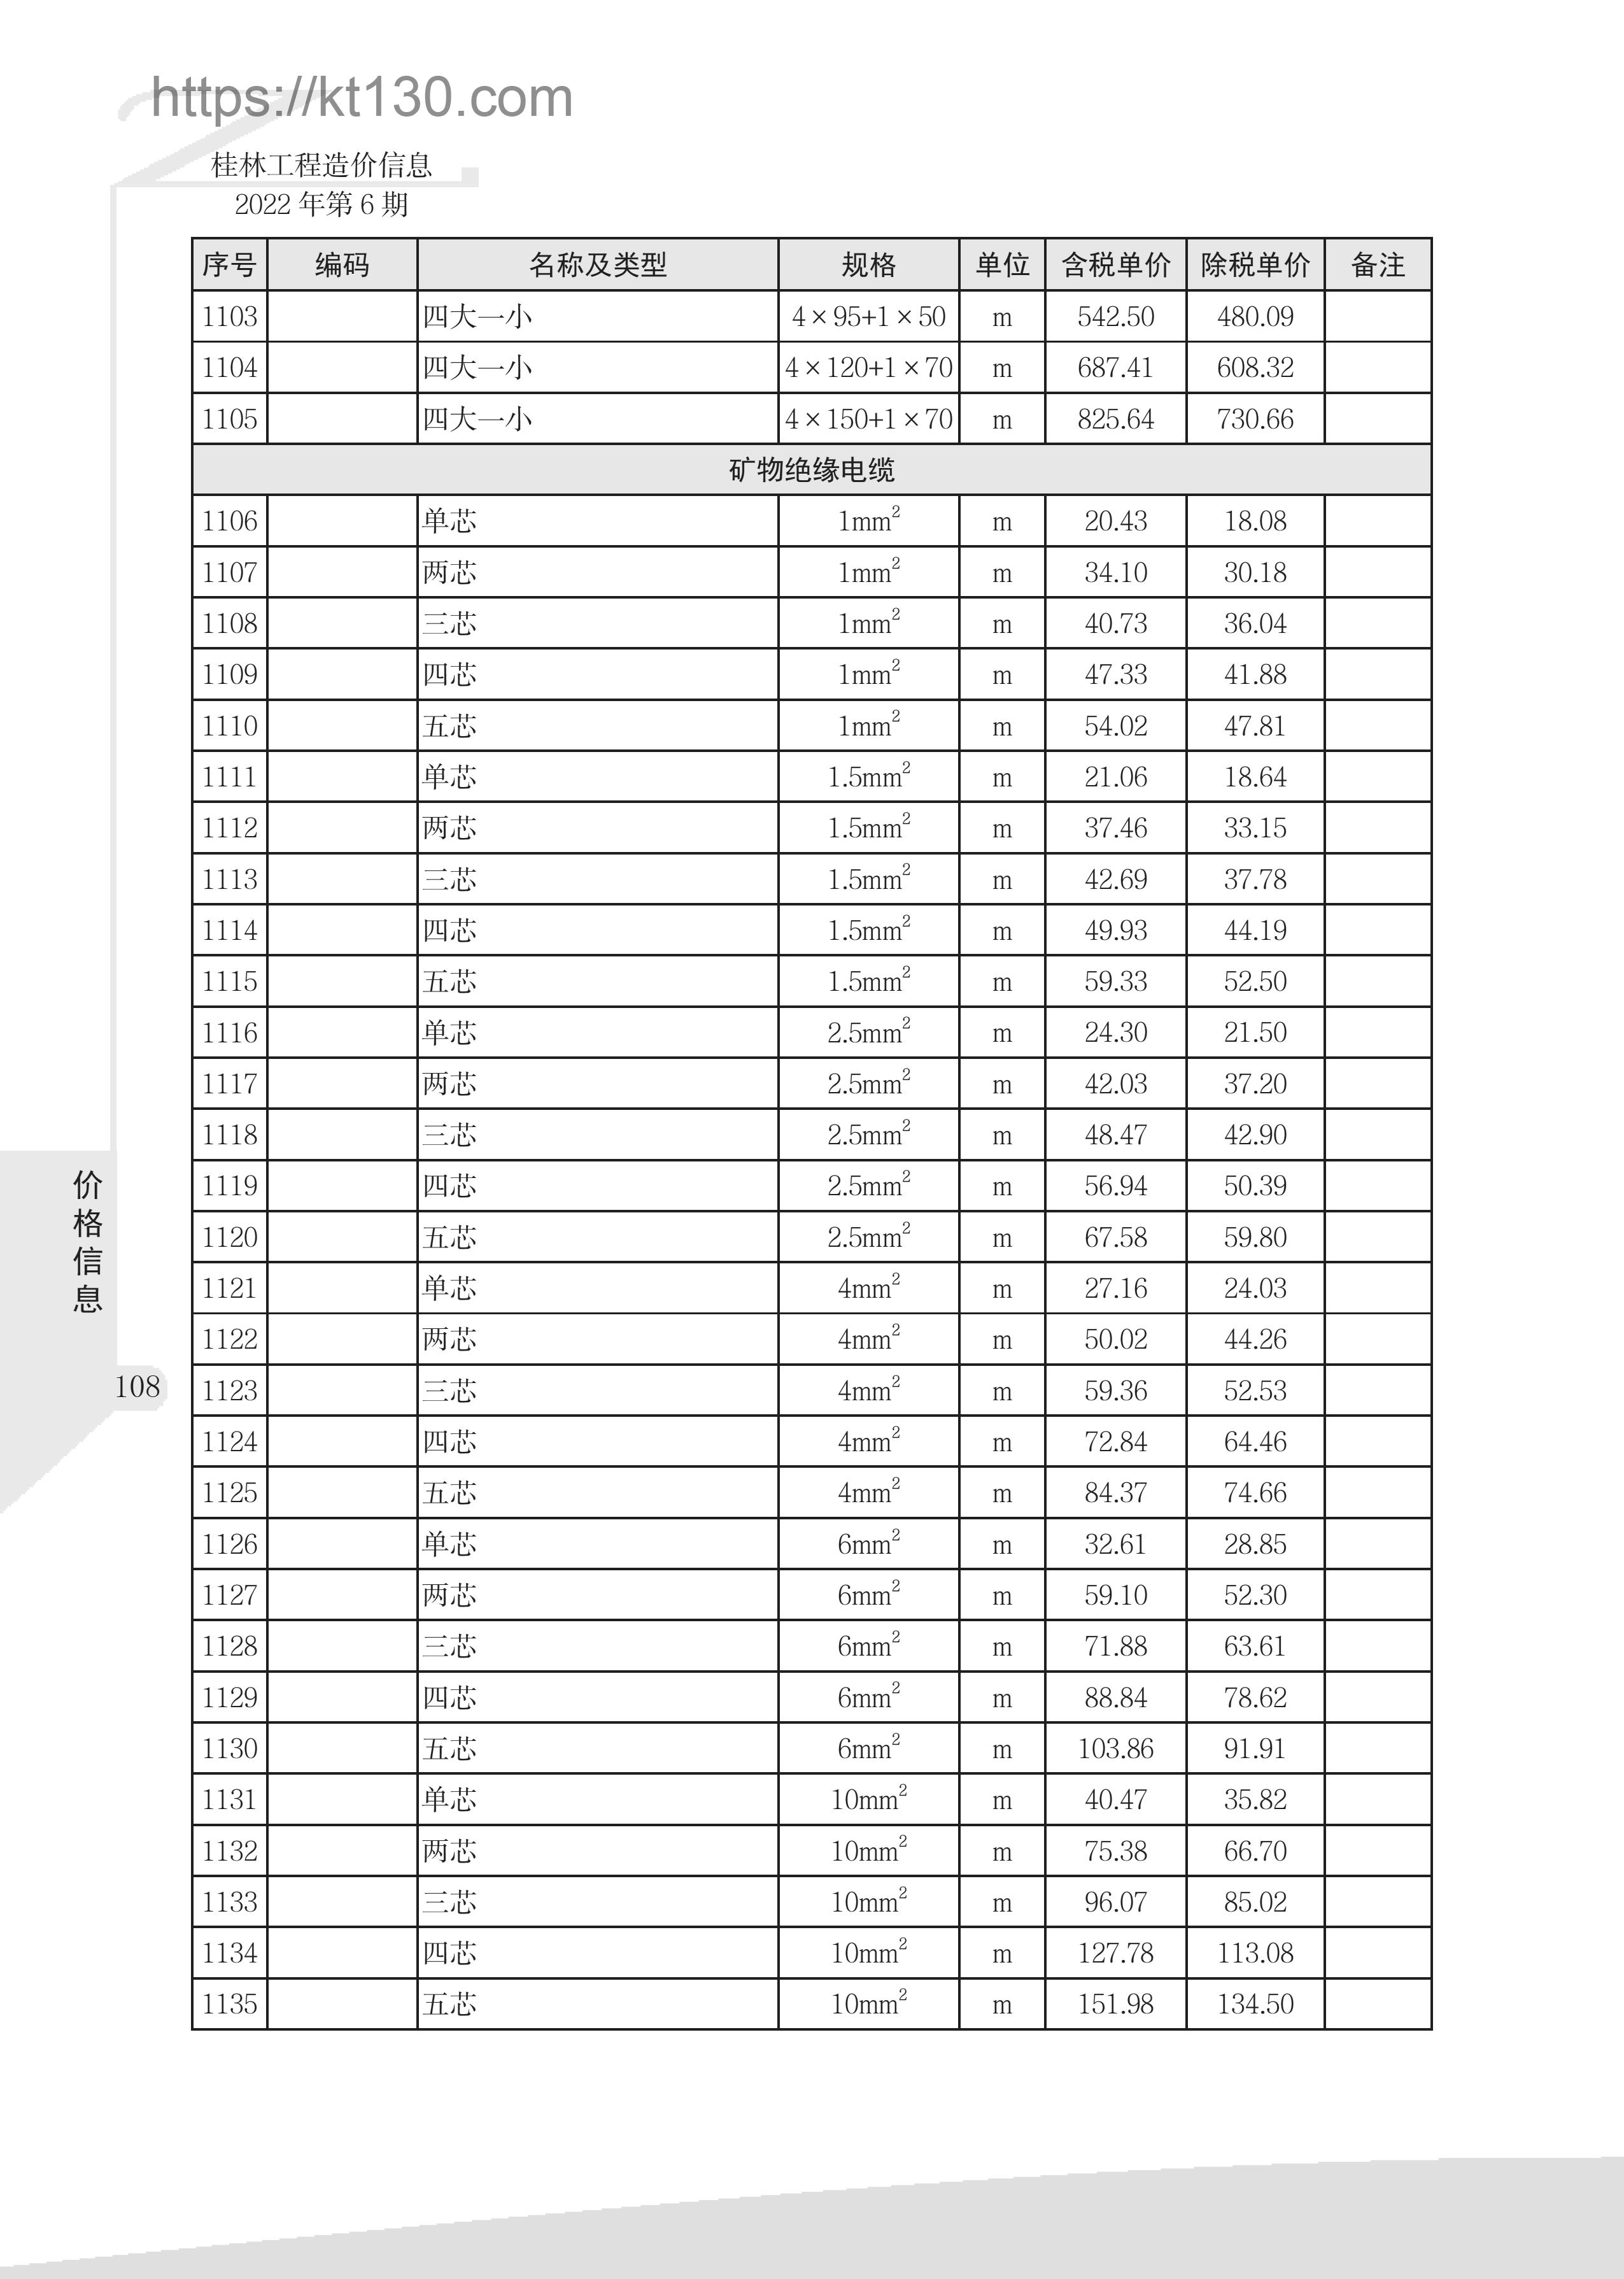 桂林市2022年6月建筑材料价_矿物绝缘电缆_51984